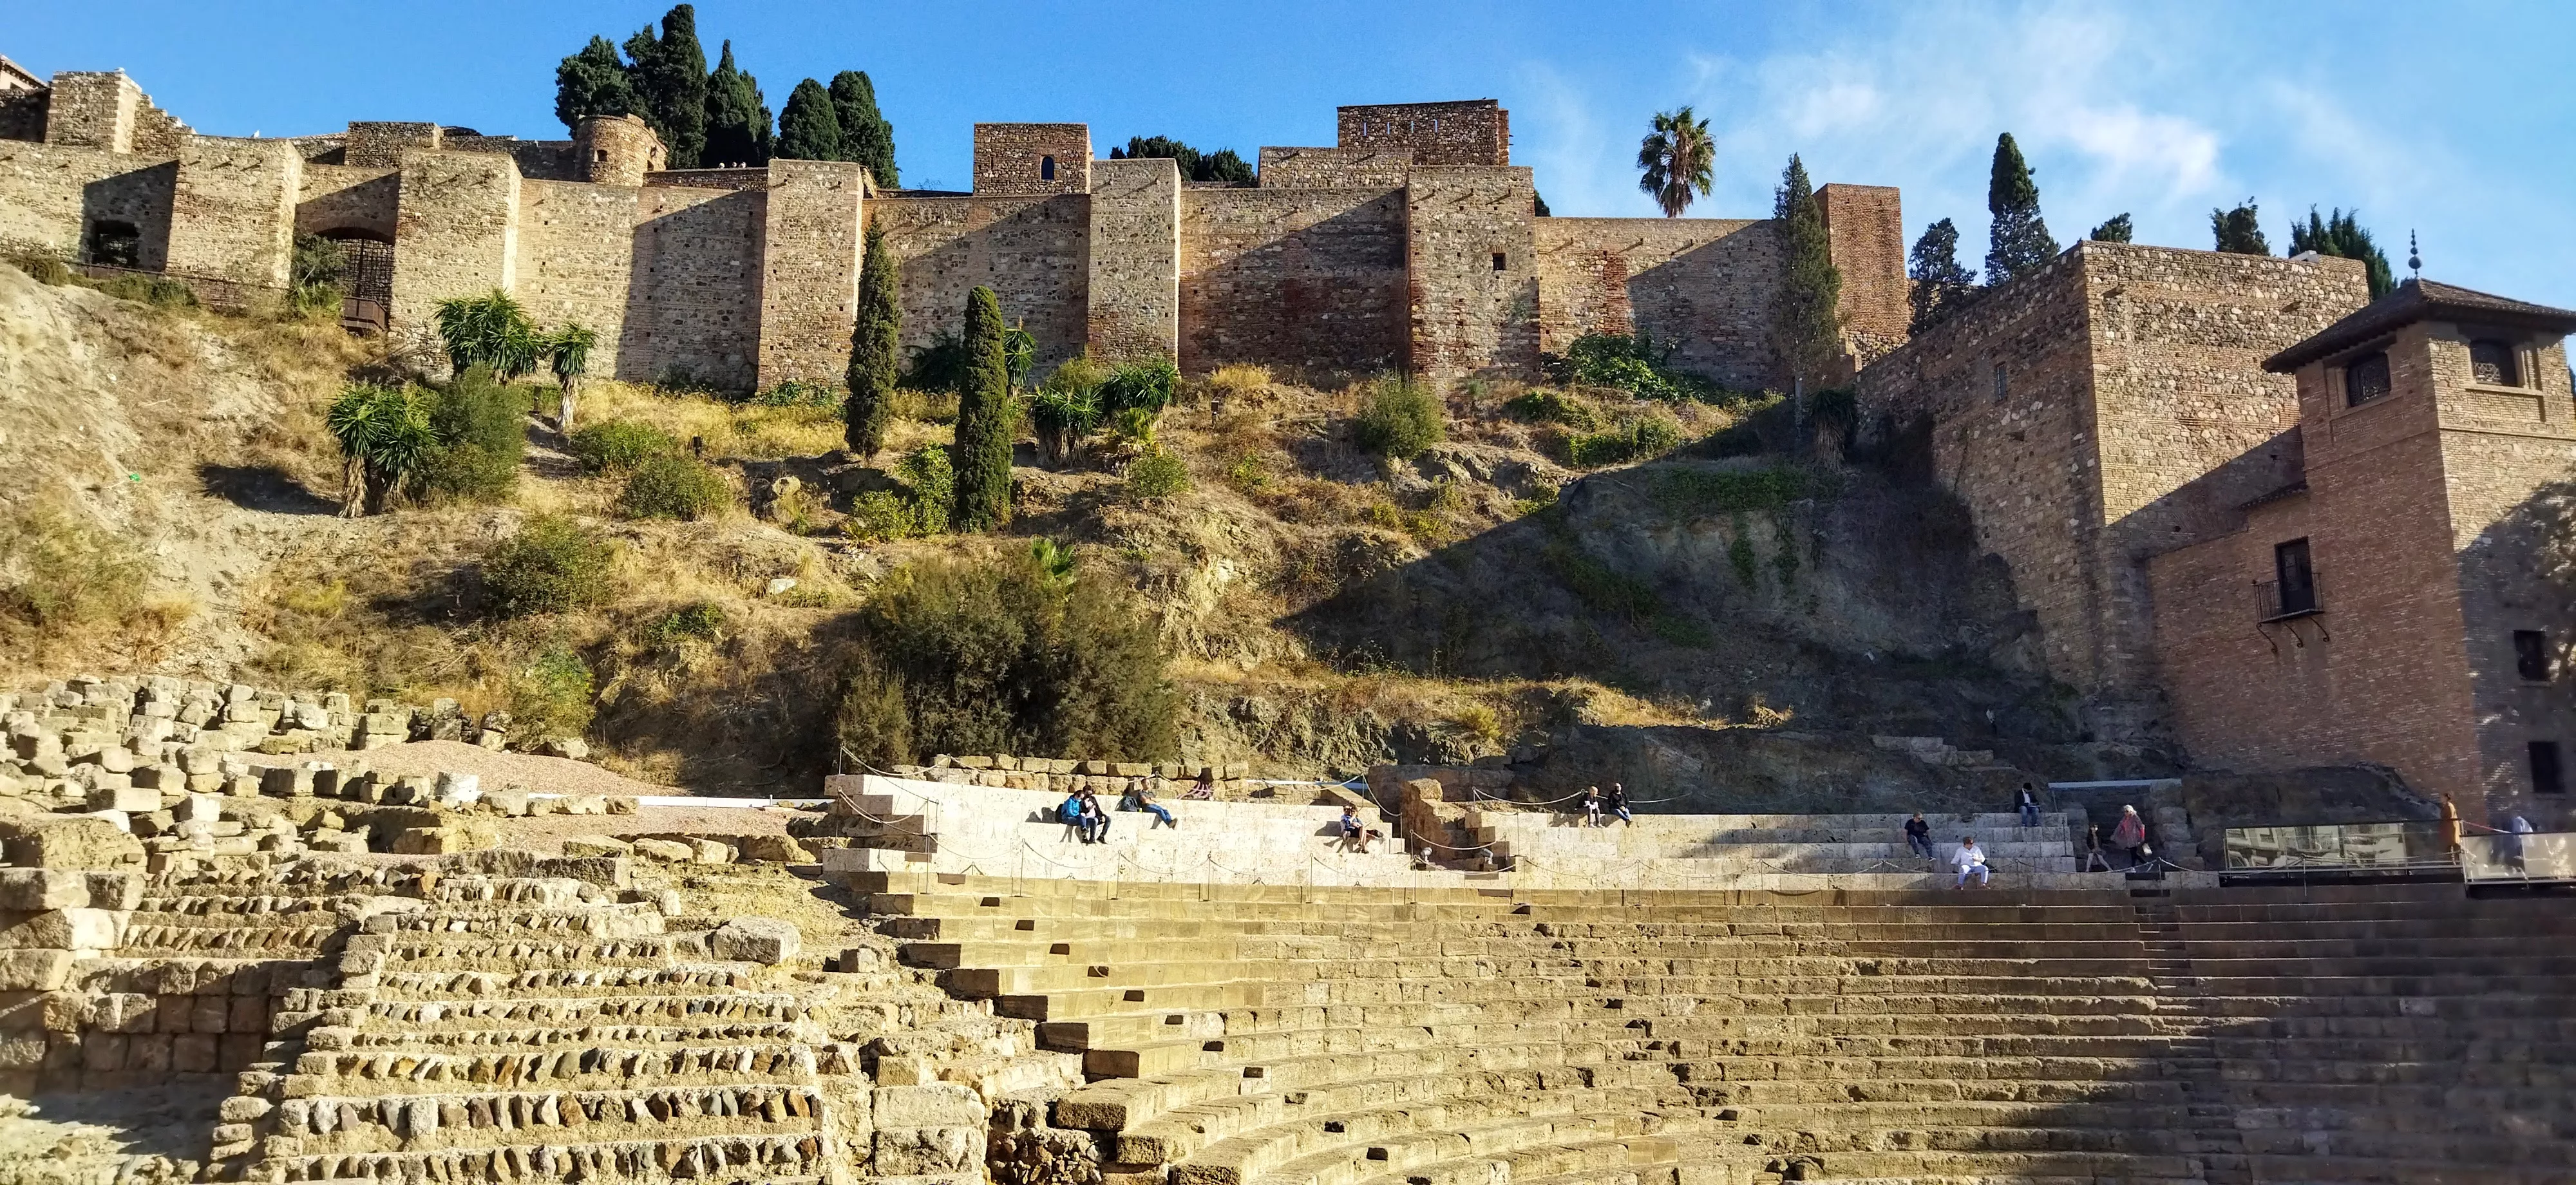 Возле хорошо сохранившегося римского амфитеатра любят отдыхать туристы и местные